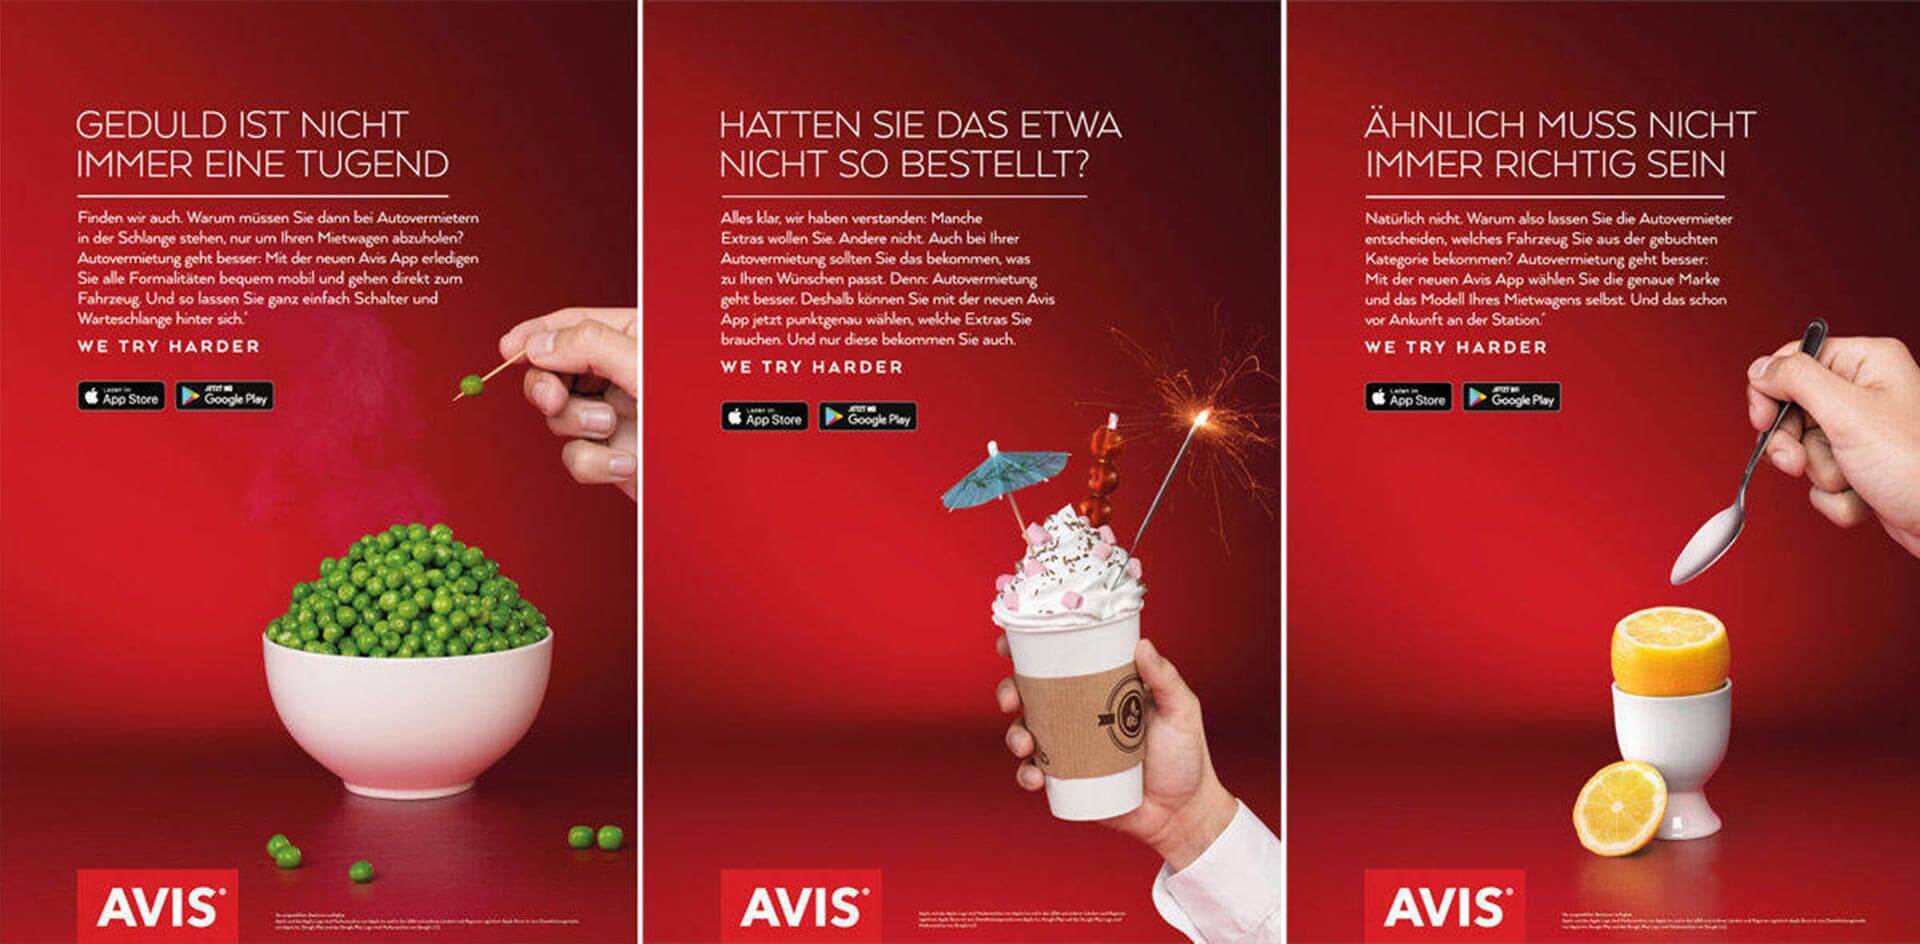 AVIS, אז והיום. חברת AVIS משלבת את היתרונות של האפליקציה שלהם בעזרת אפונה, קפה ולימונים